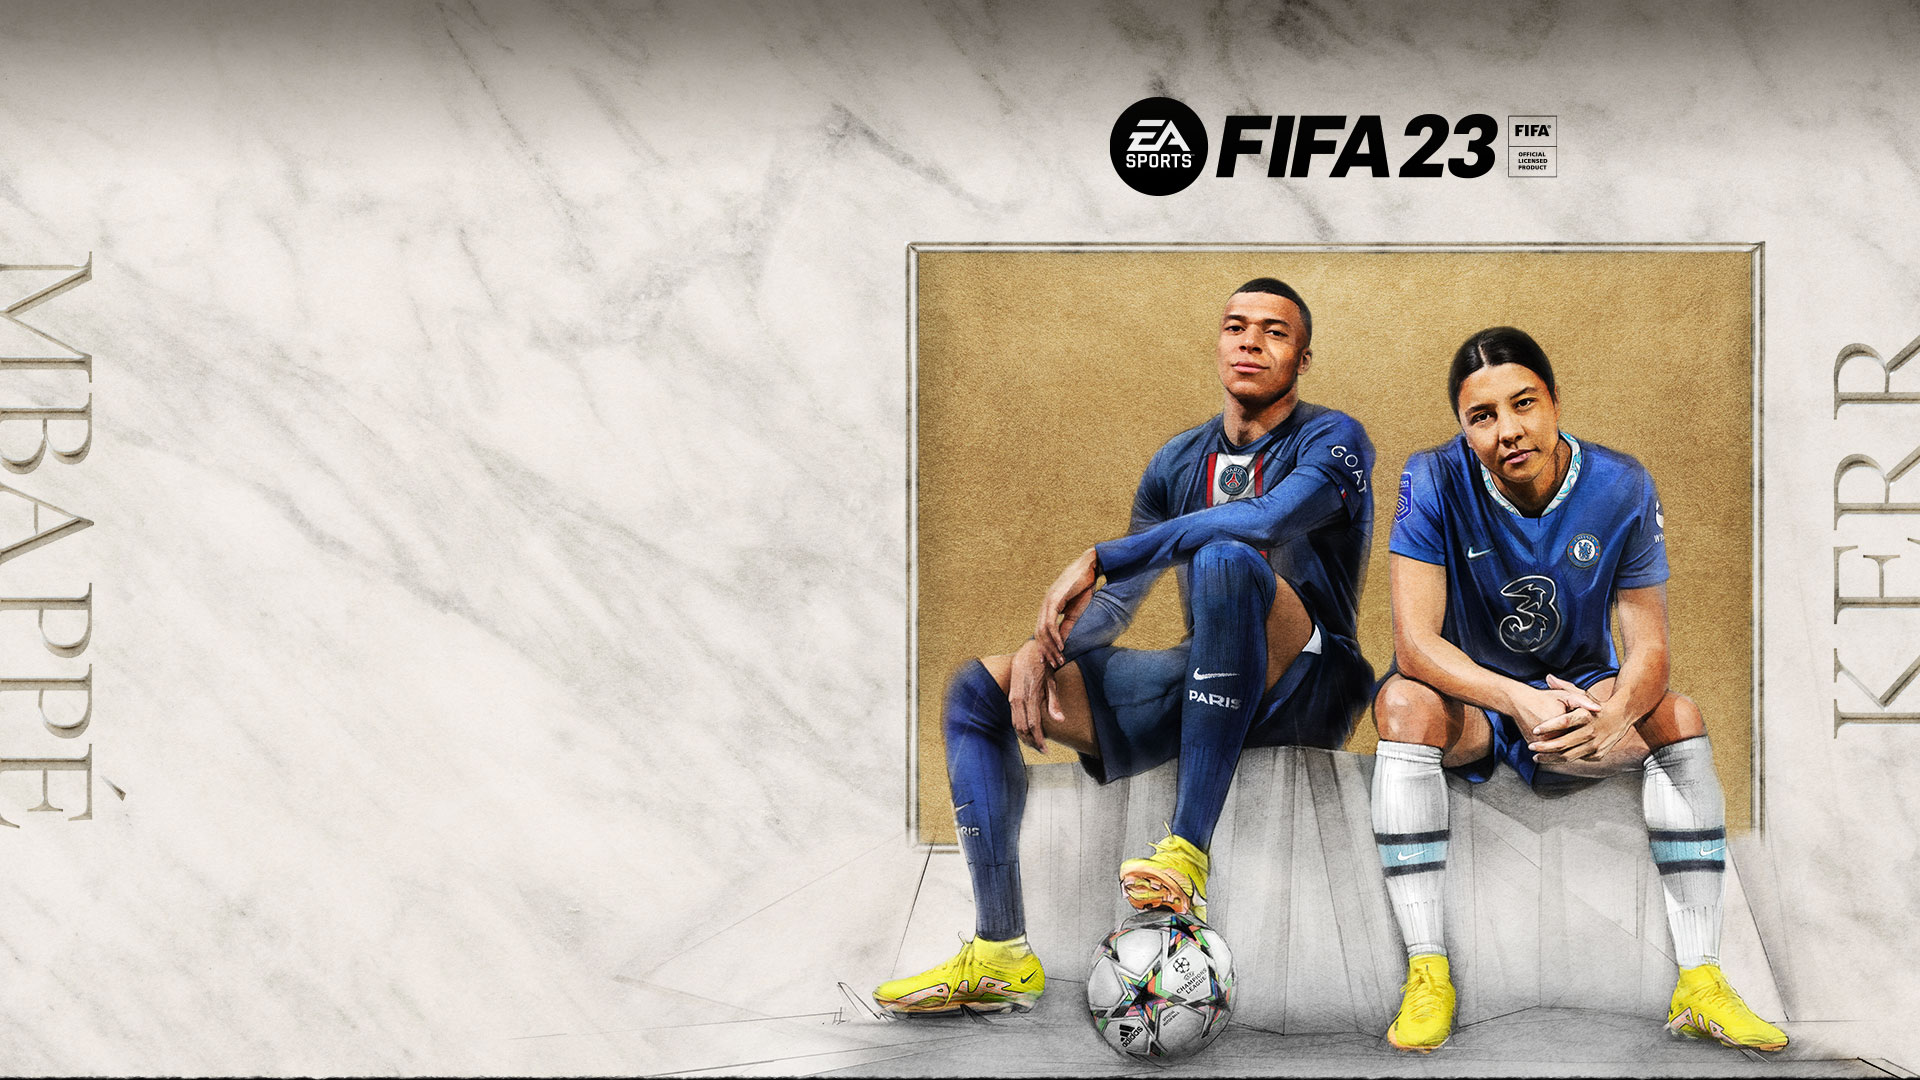 EA SPORTS FIFA 23, FIFA Official Licensed Product, Ultimate Edition, Mbappe, Kerr, två spelare sitter på en tygklädd bänk framför en korkskiva.